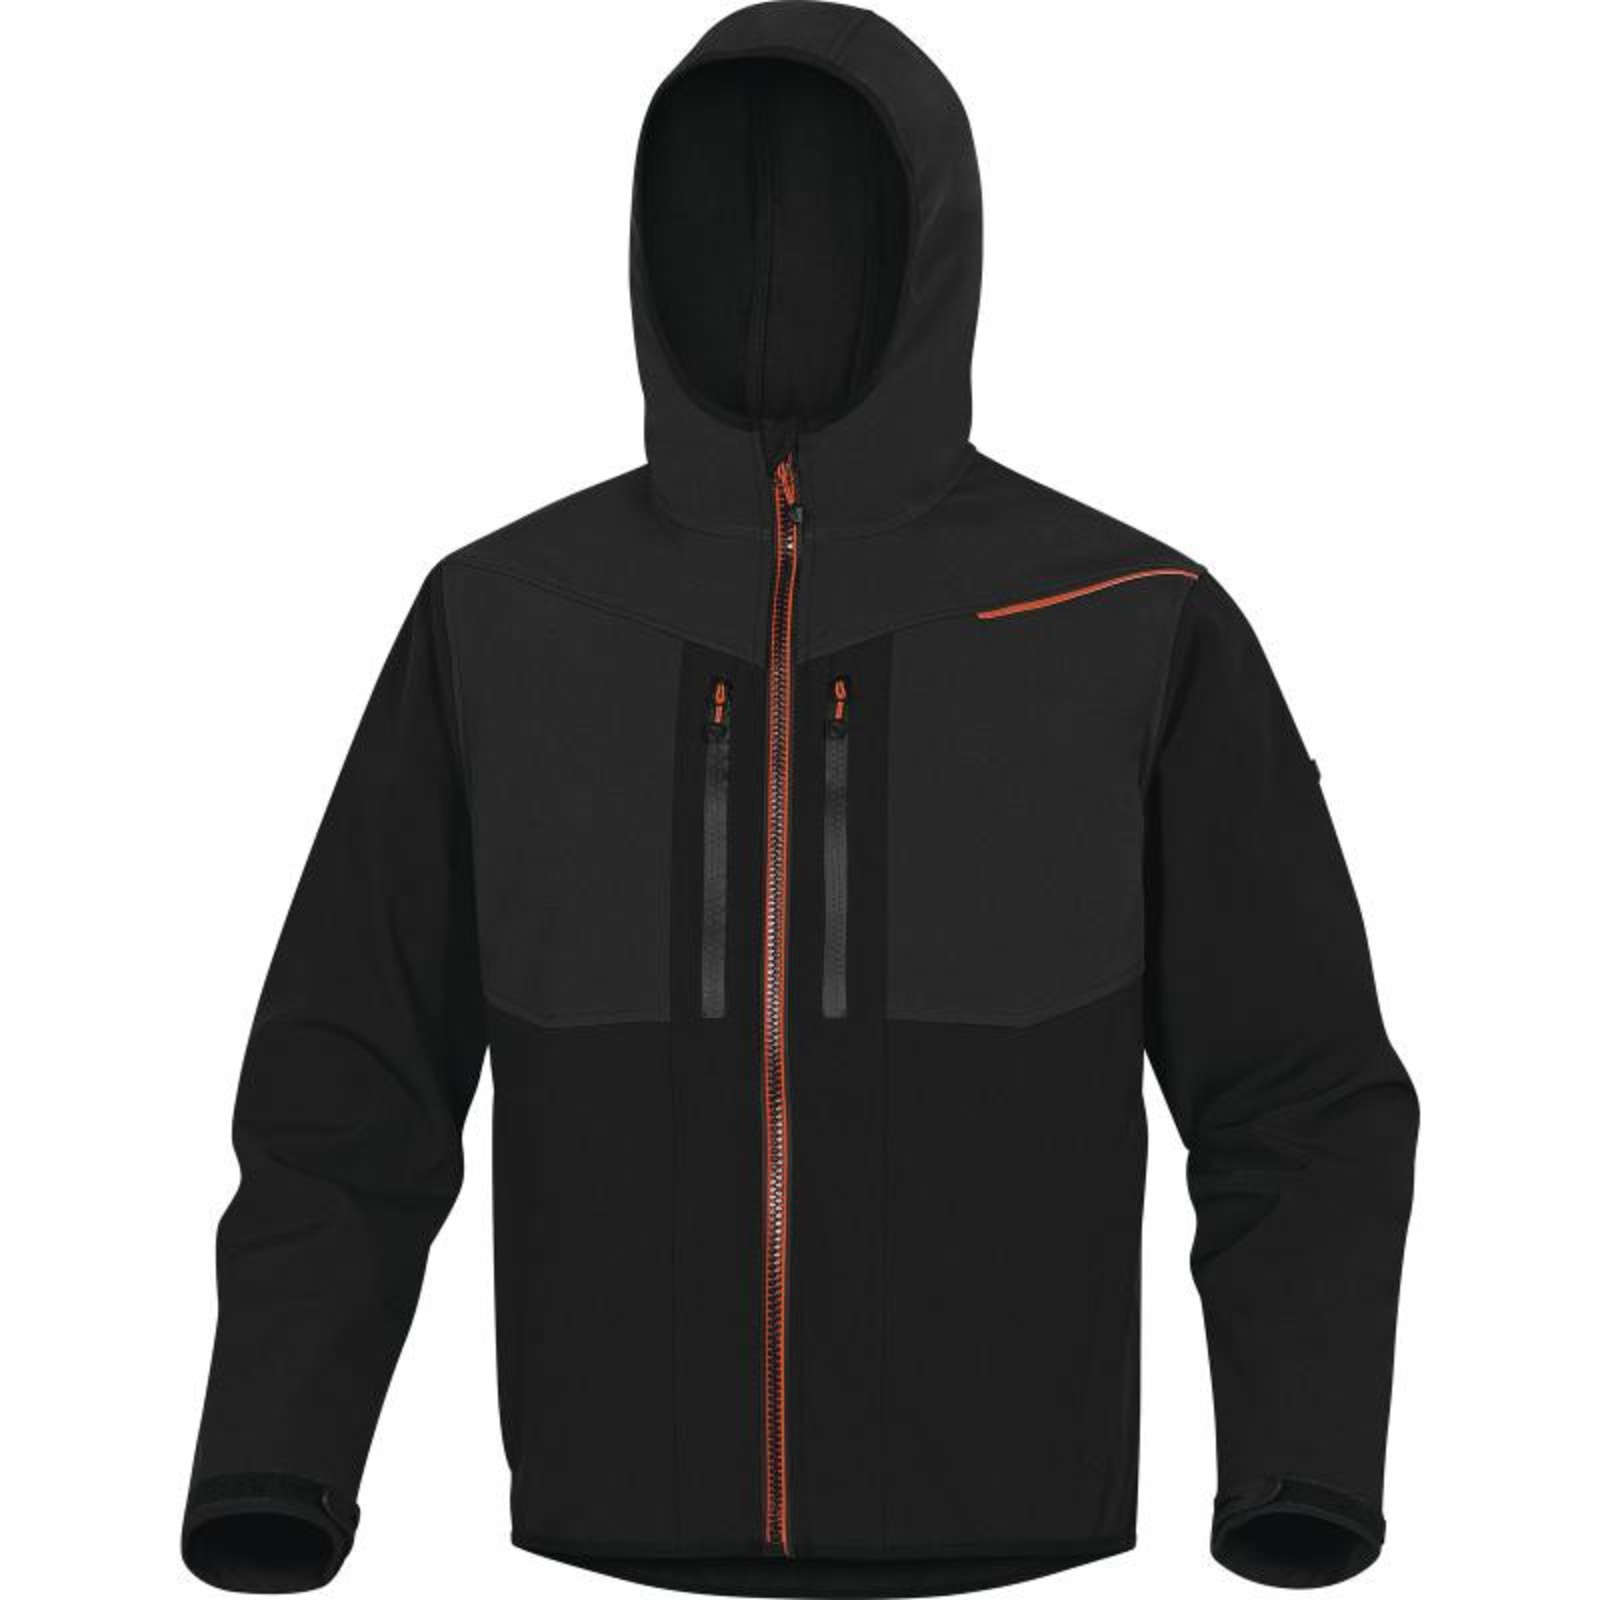 Softshellová bunda Delta Plus Horten2 - veľkosť: M, farba: čierna/oranžová